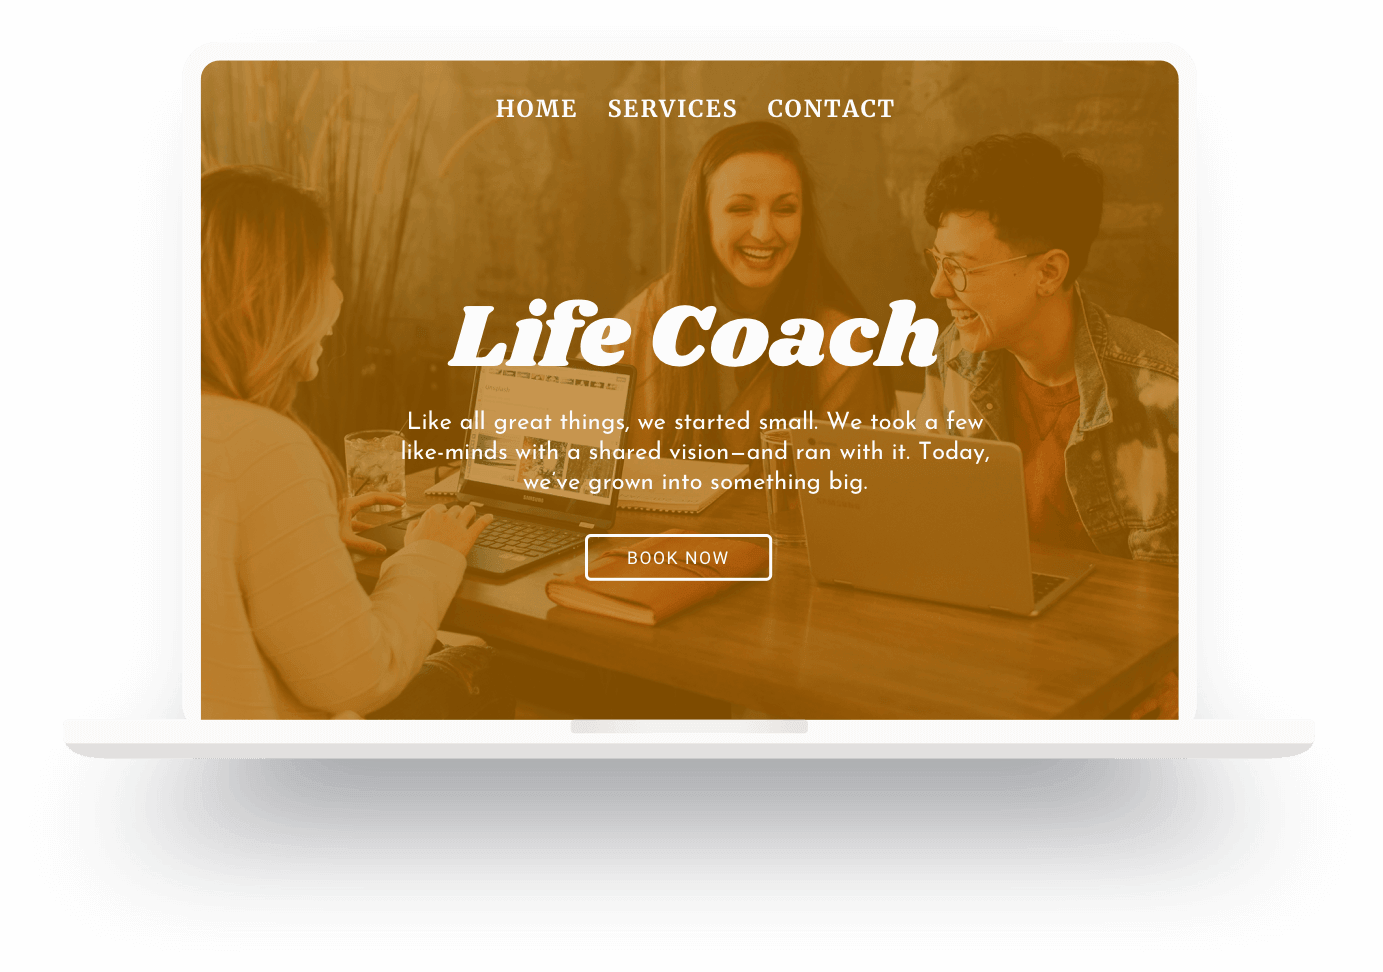 Beispiel für eine mit Jimdo erstellte Website eines Lifecoaches